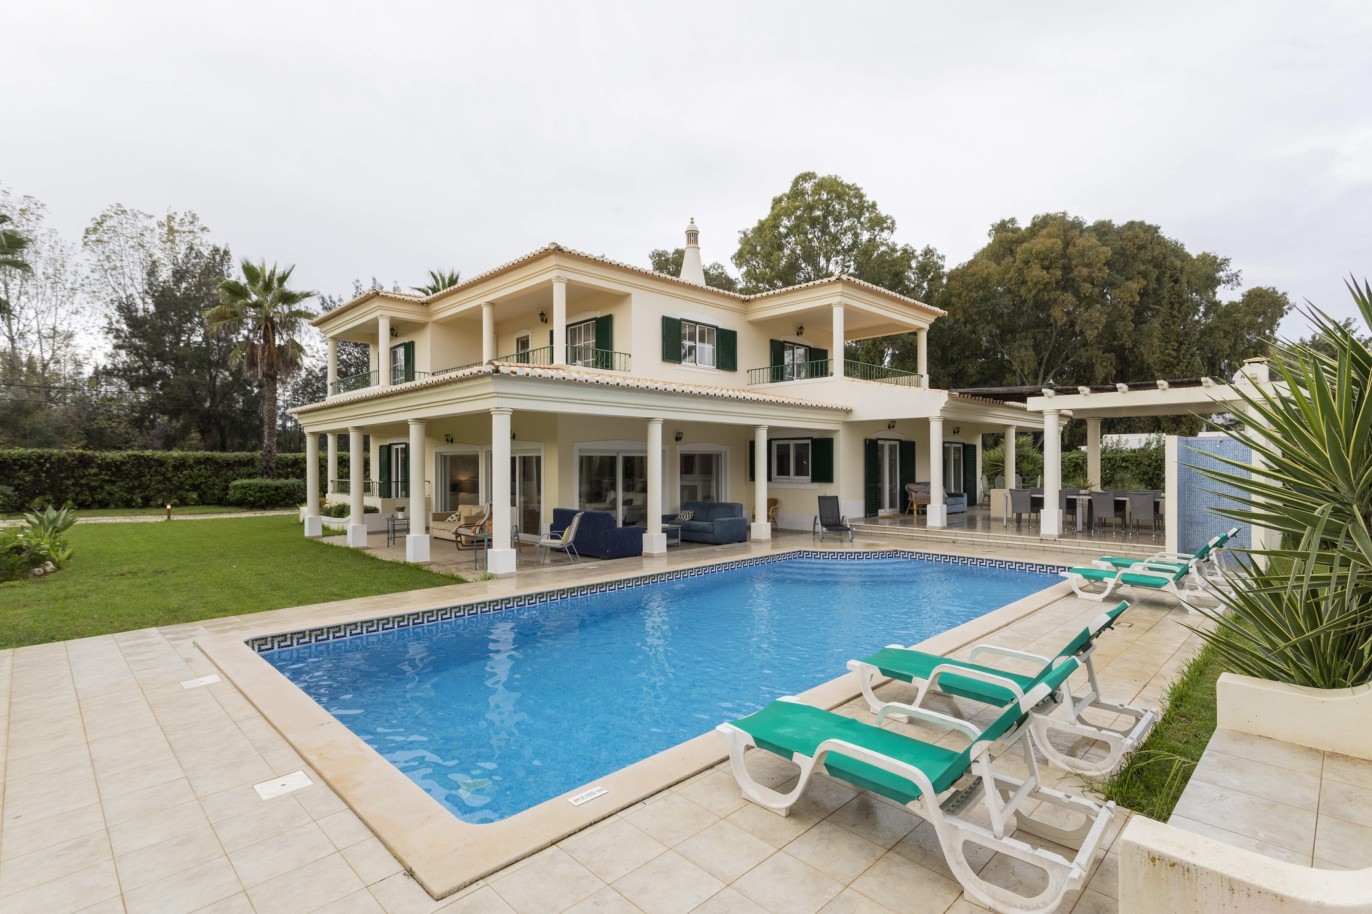 4 Bedroom Villa with pool for sale in Penina Golf, Alvor, Algarve_243137